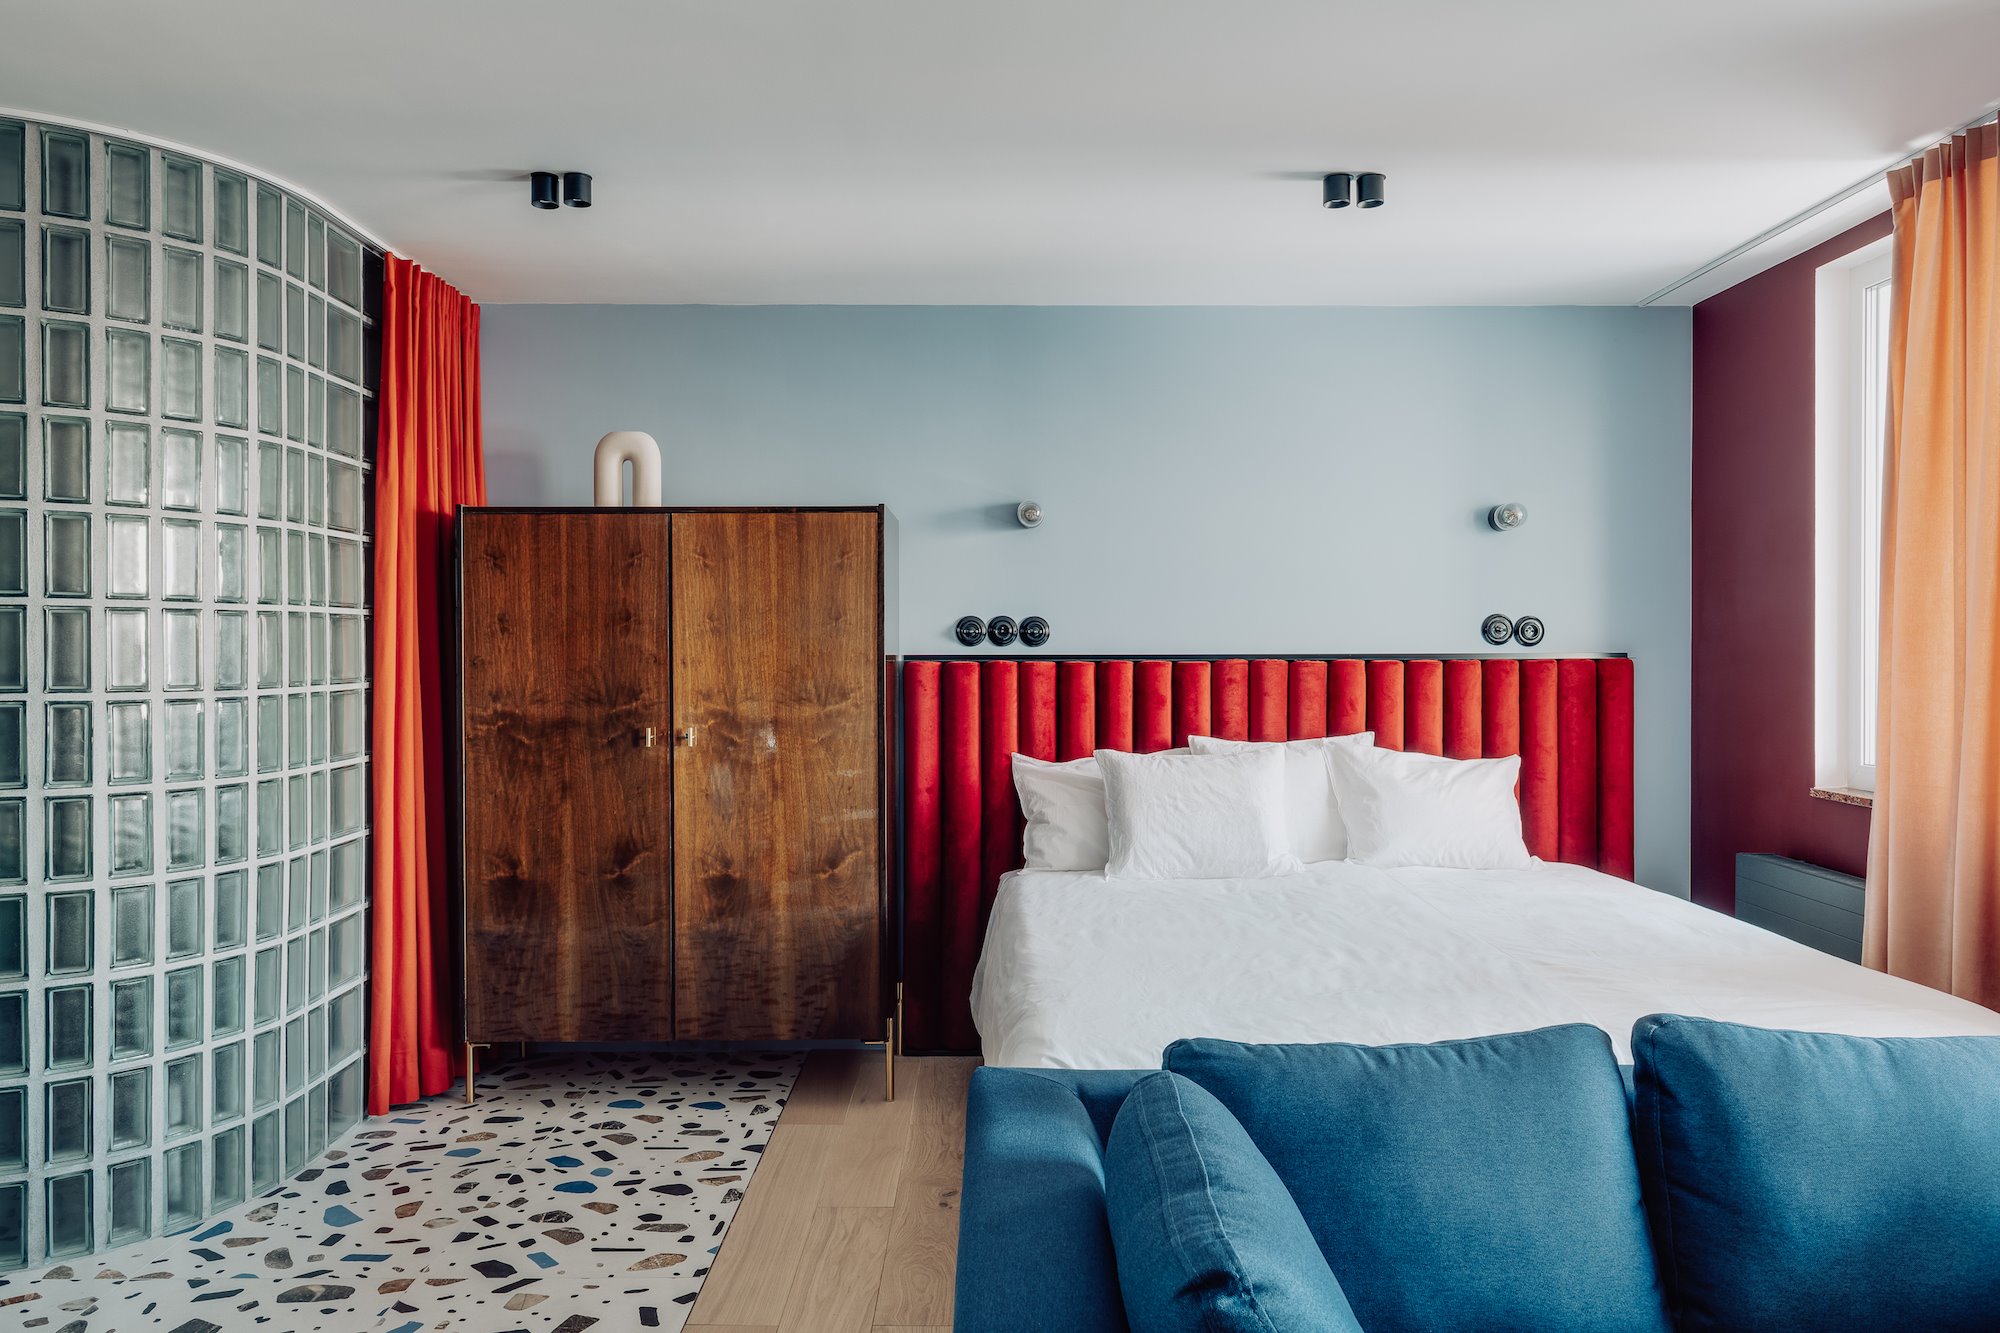 Dormitorio con cabecero rojo y mueble vintage.